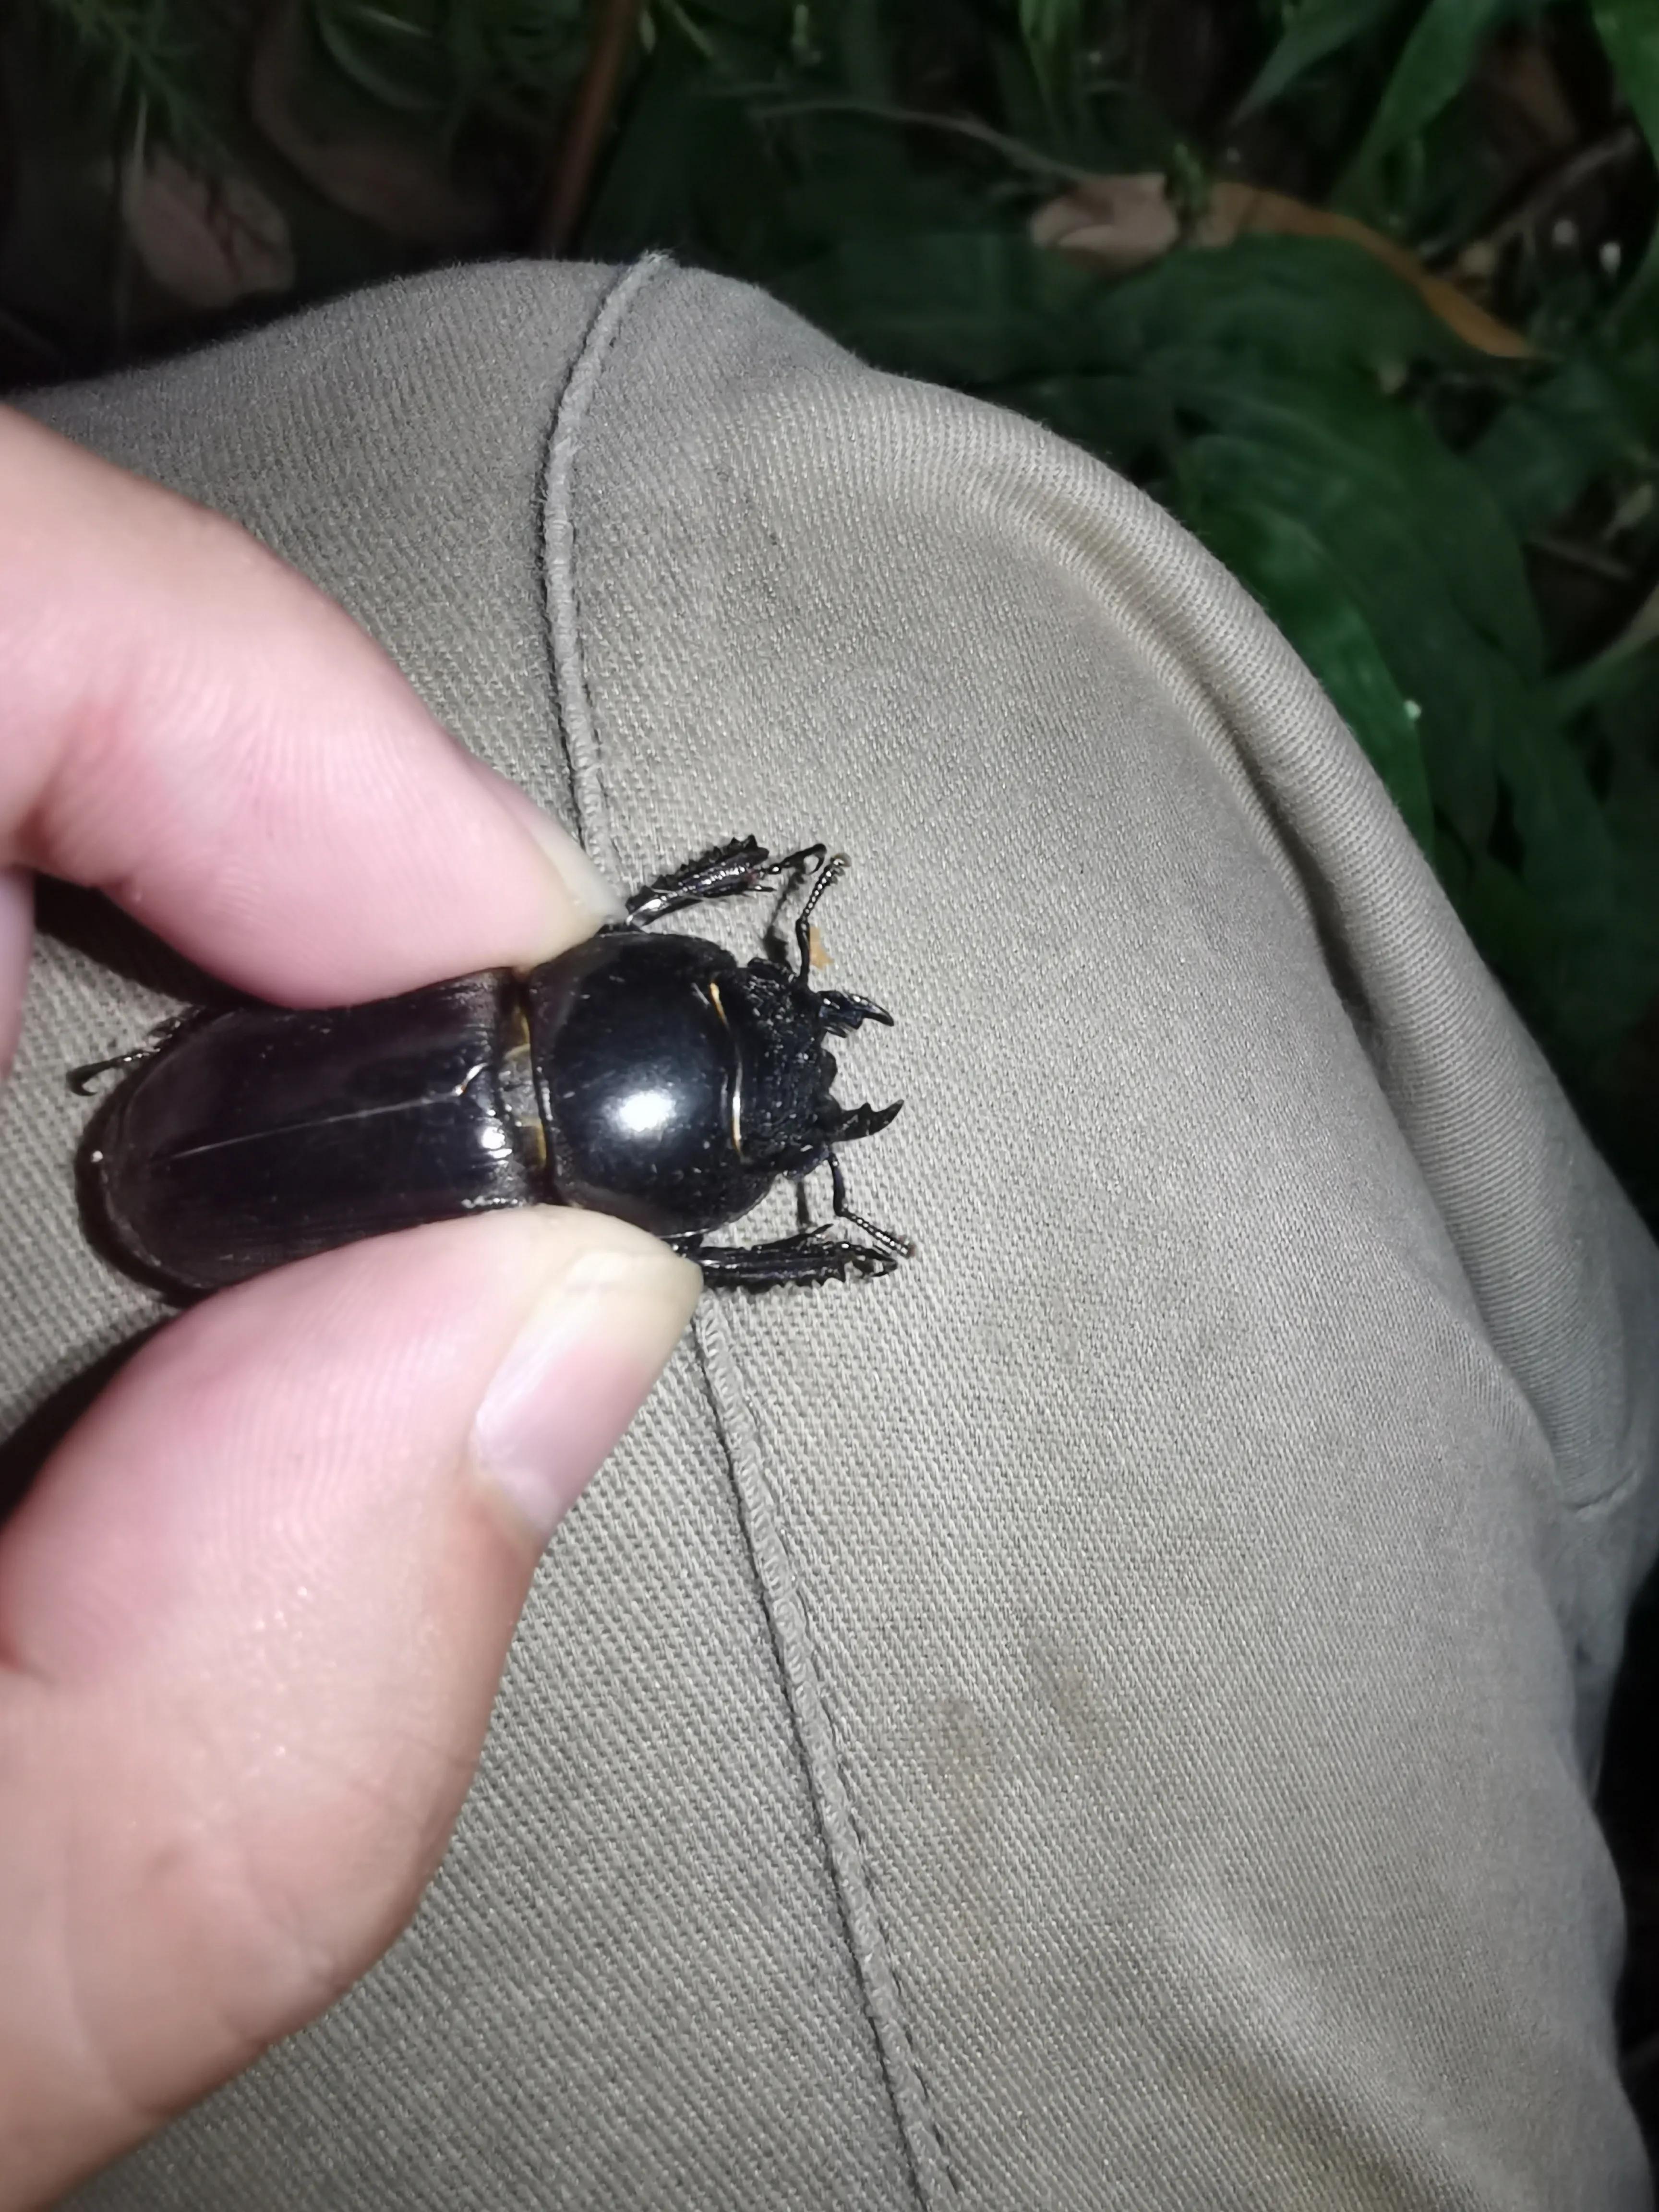 最近家里很多黑色的小硬壳虫，会飞，但不知道是什么是虫。会咬人吗？怎样才可以消灭？急！_百度知道